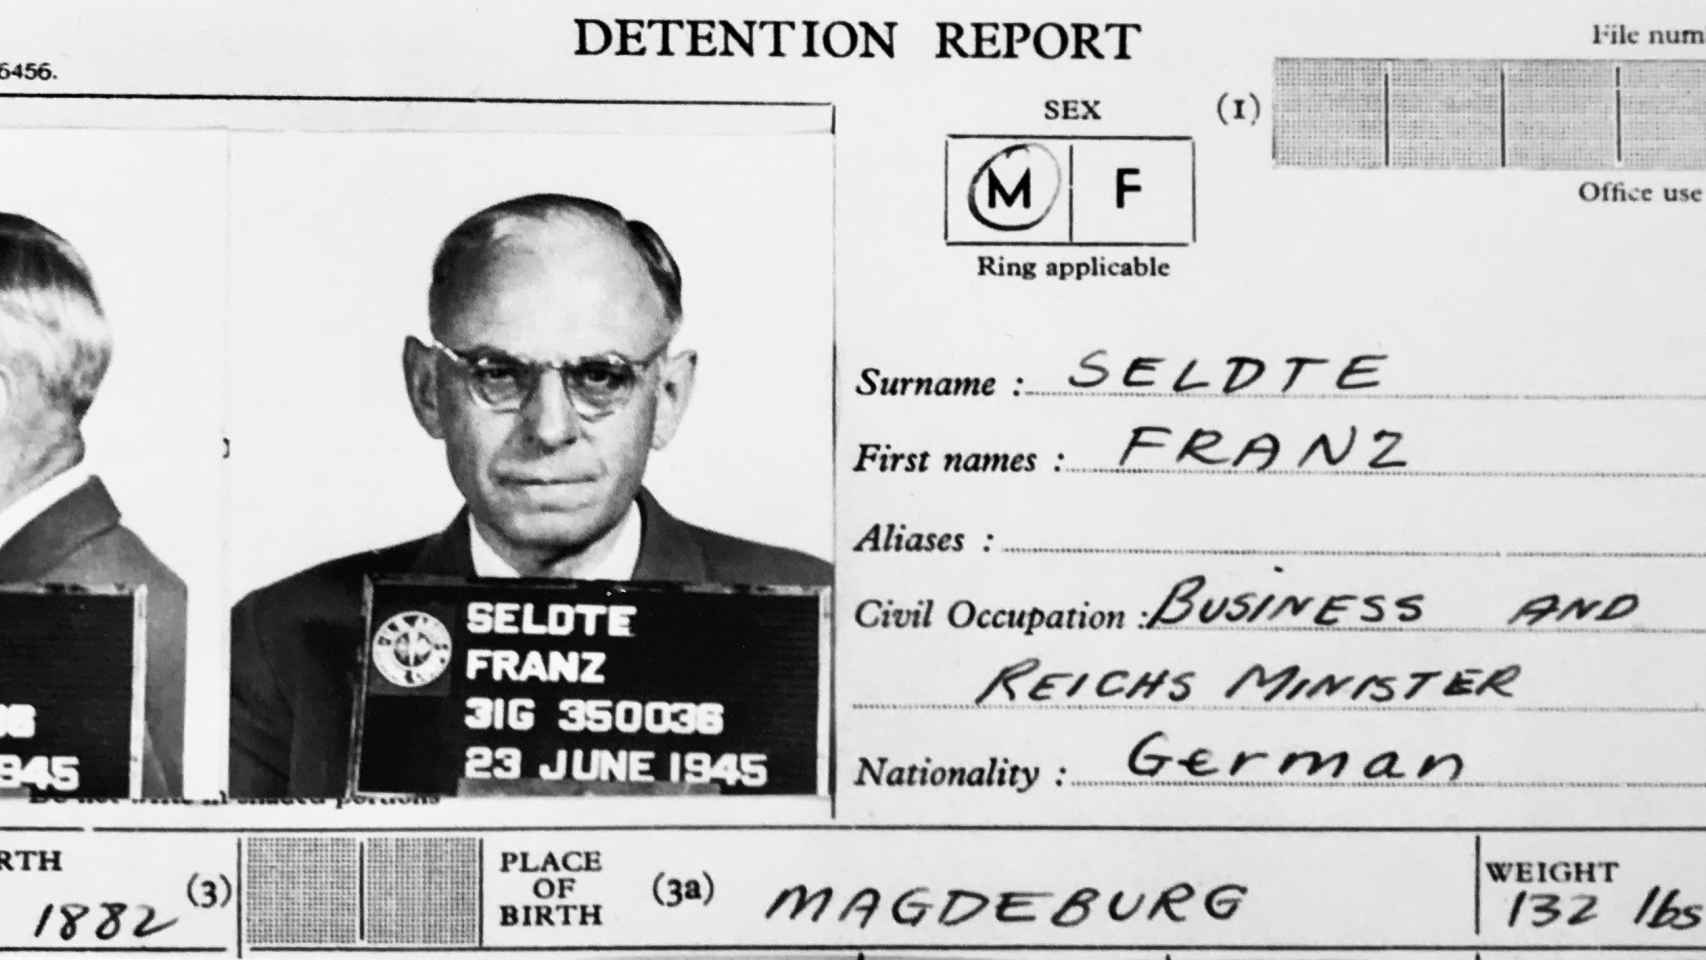 Ficha de detención de Franz Sledte.